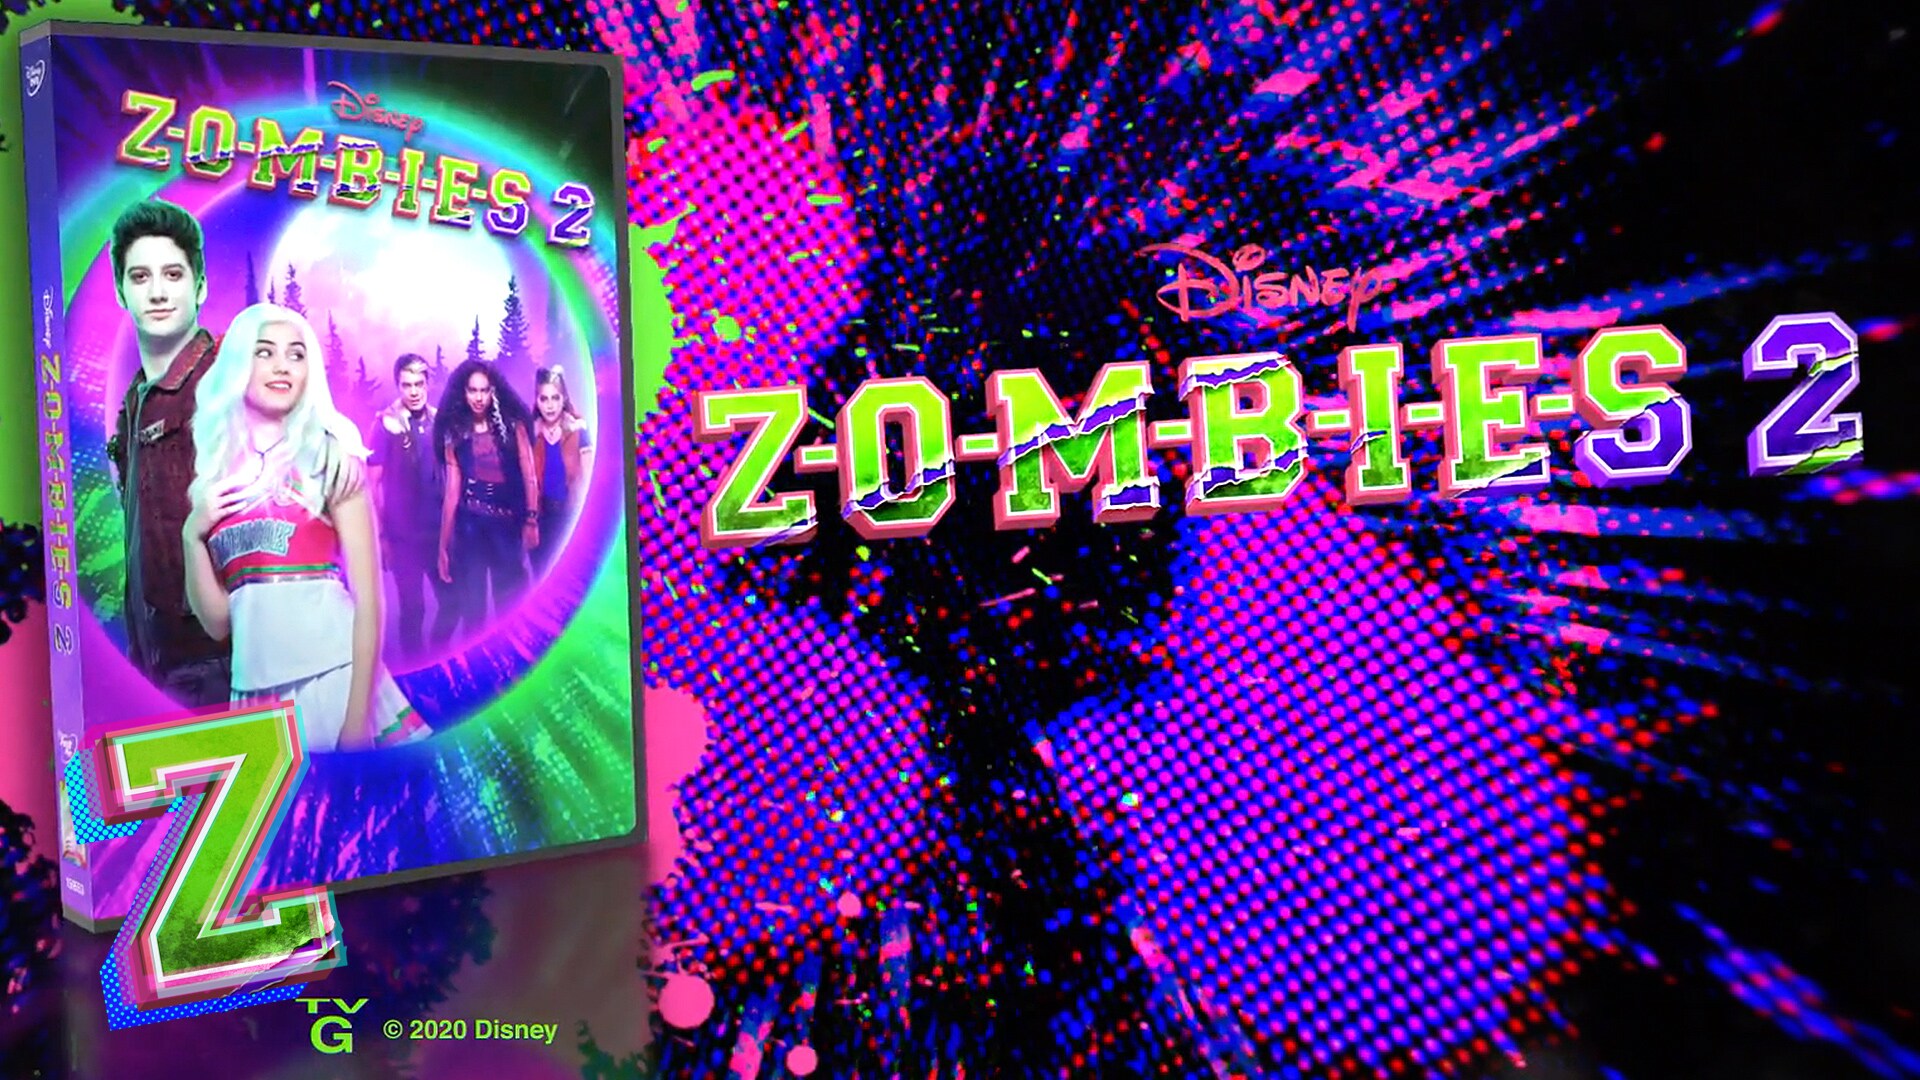 DVD Zombies 1, 2 e 3